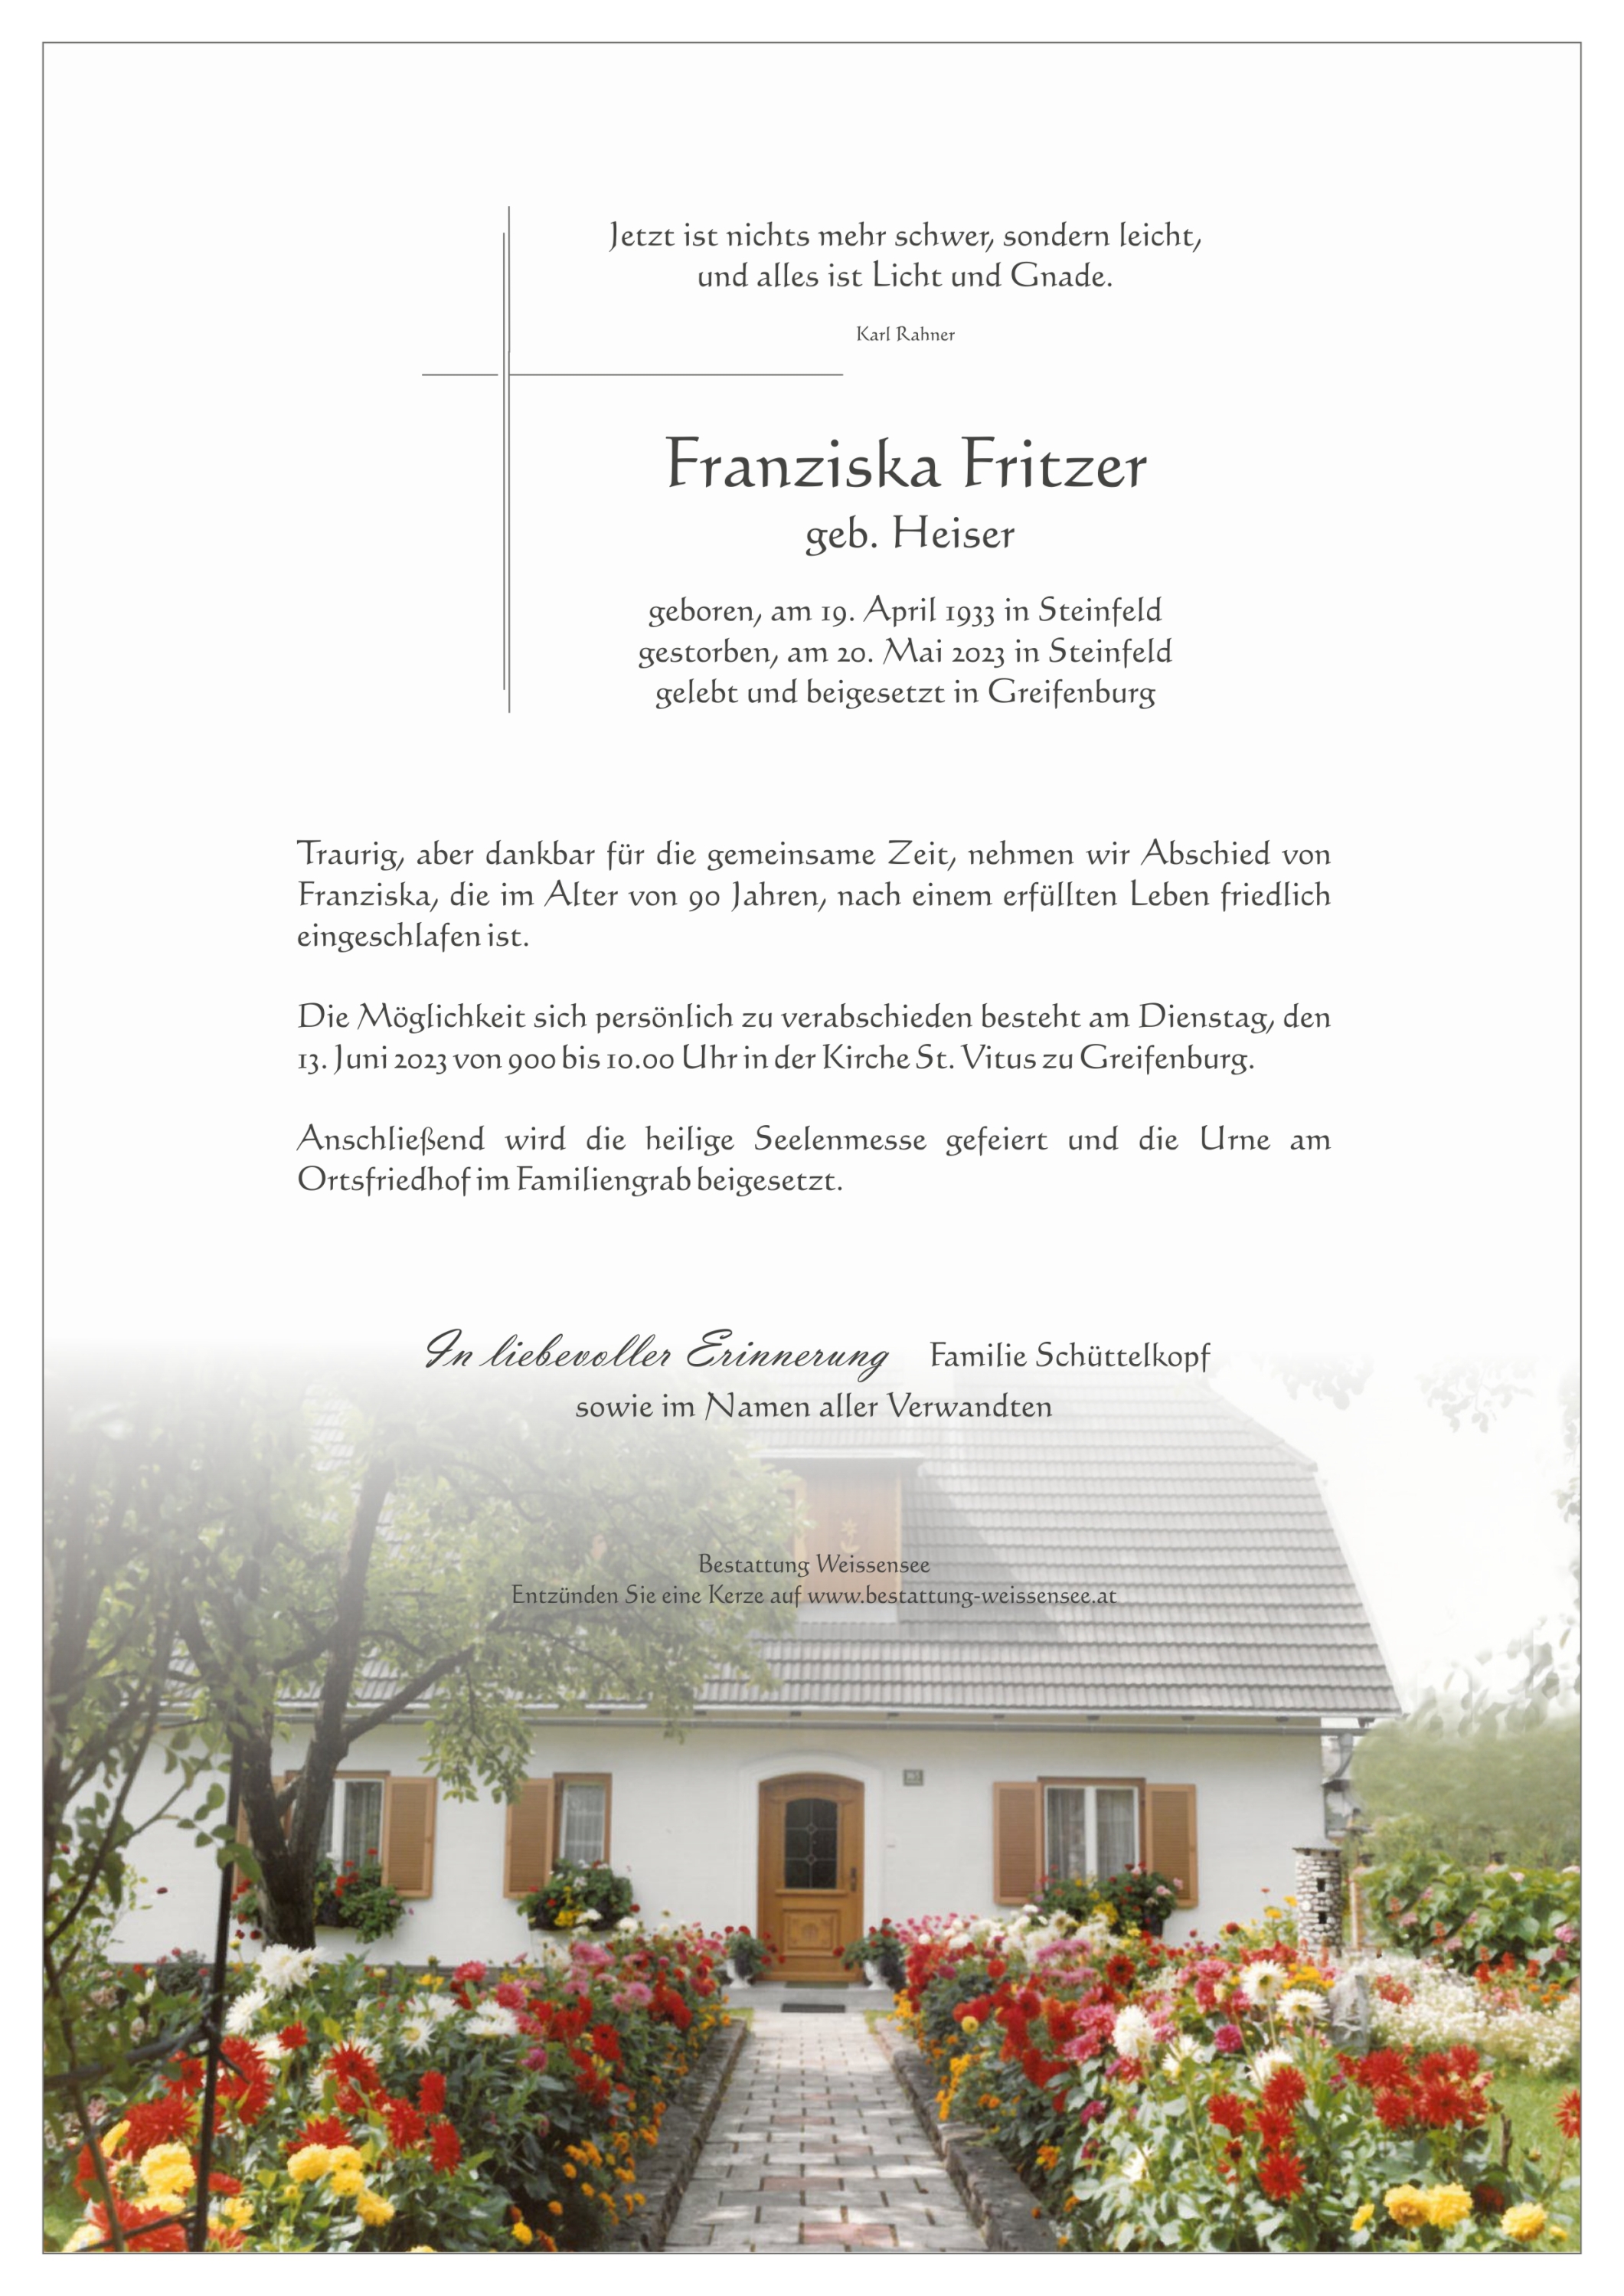 Franziska Fritzer